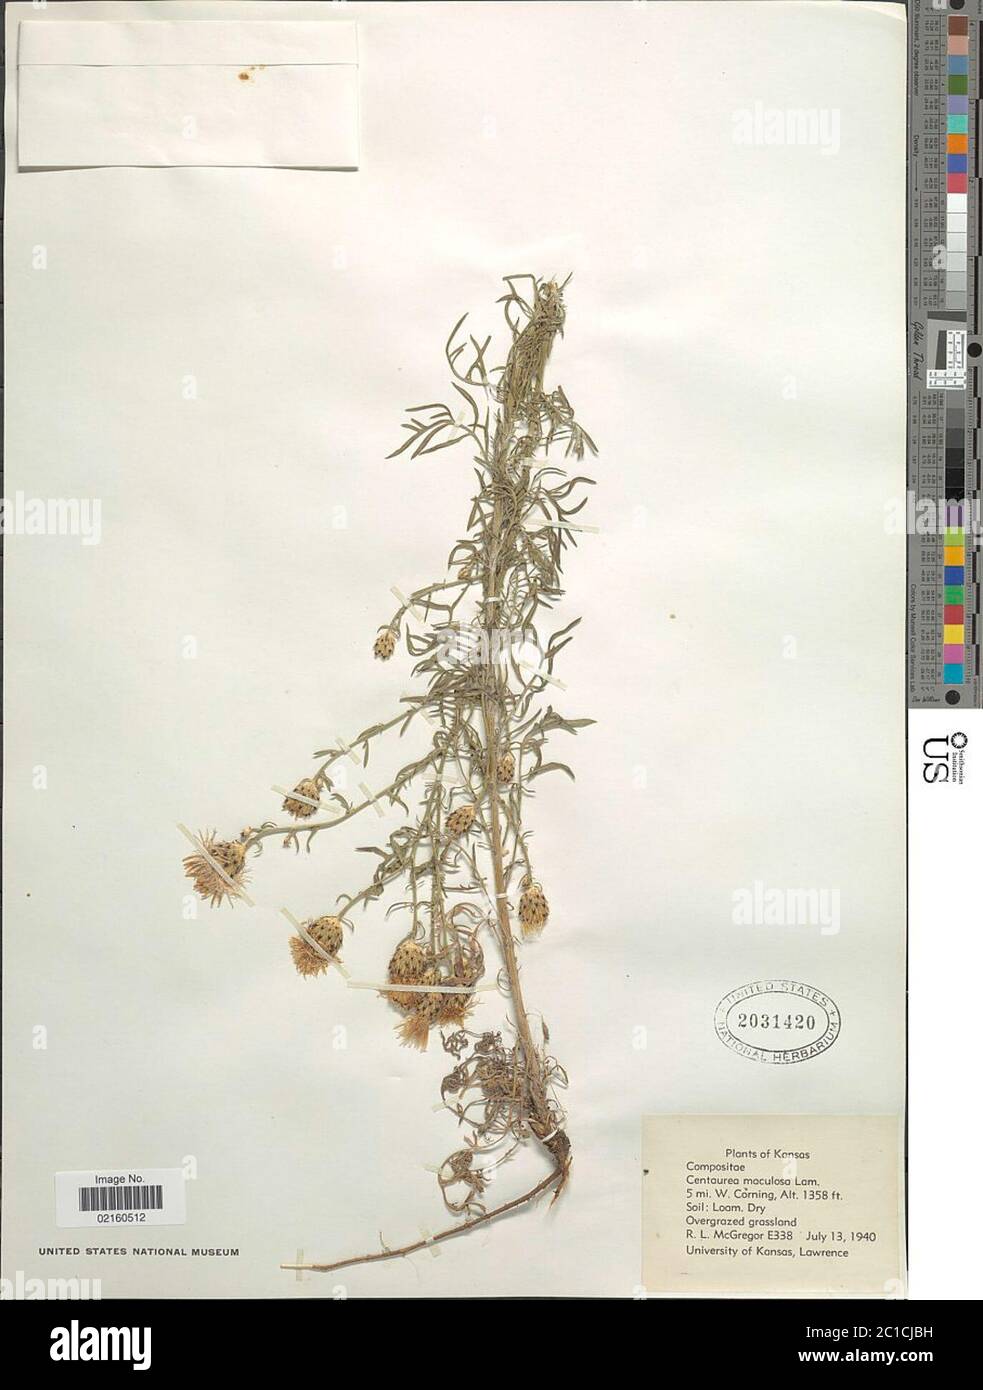 Centaurea maculosa Lam Centaurea maculosa Lam. Stock Photo